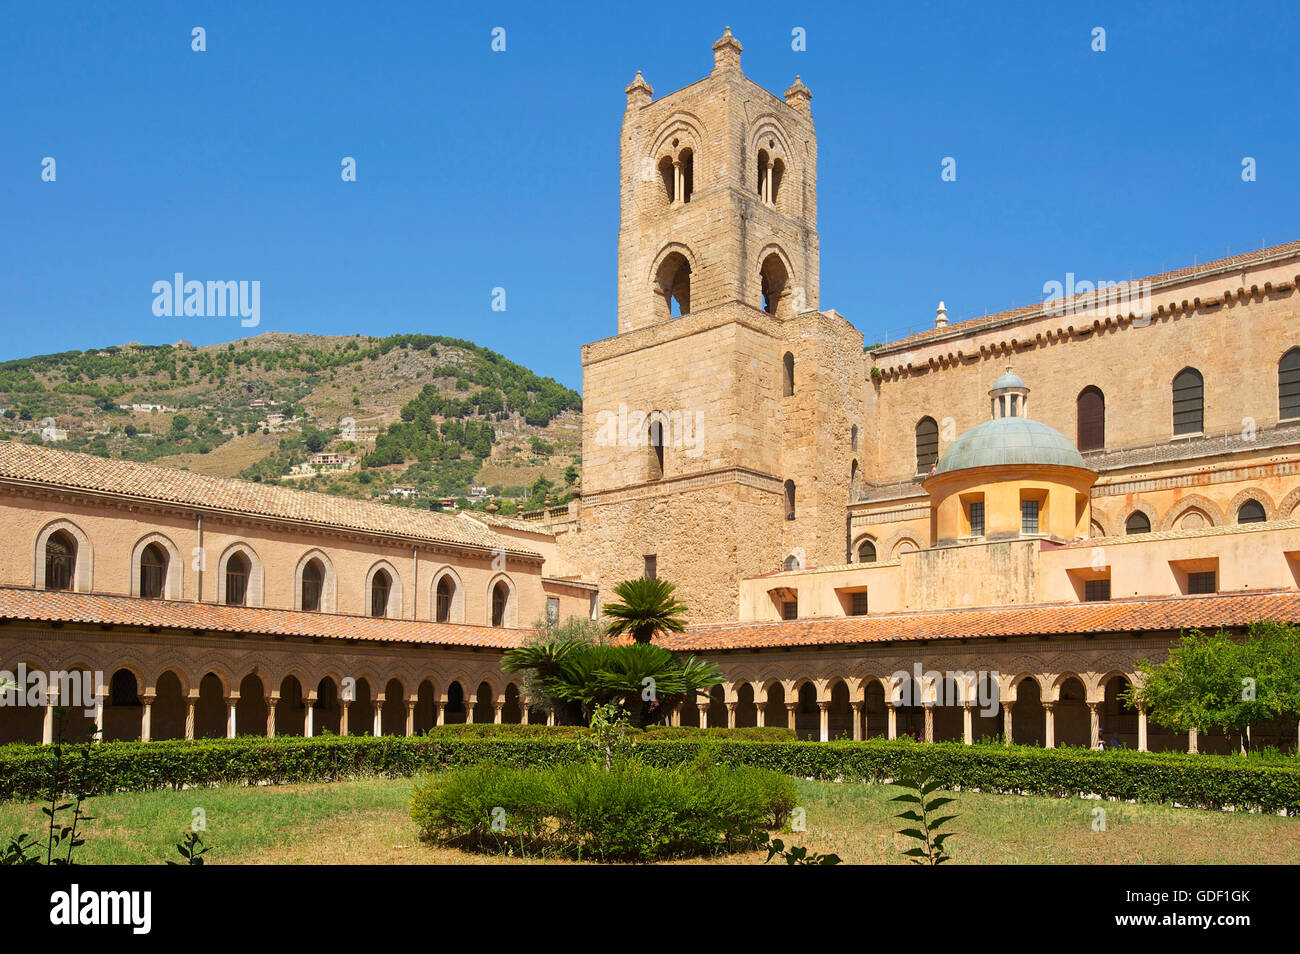 Cloître, Cathédrale de Monreale, Sicile, Italie Banque D'Images